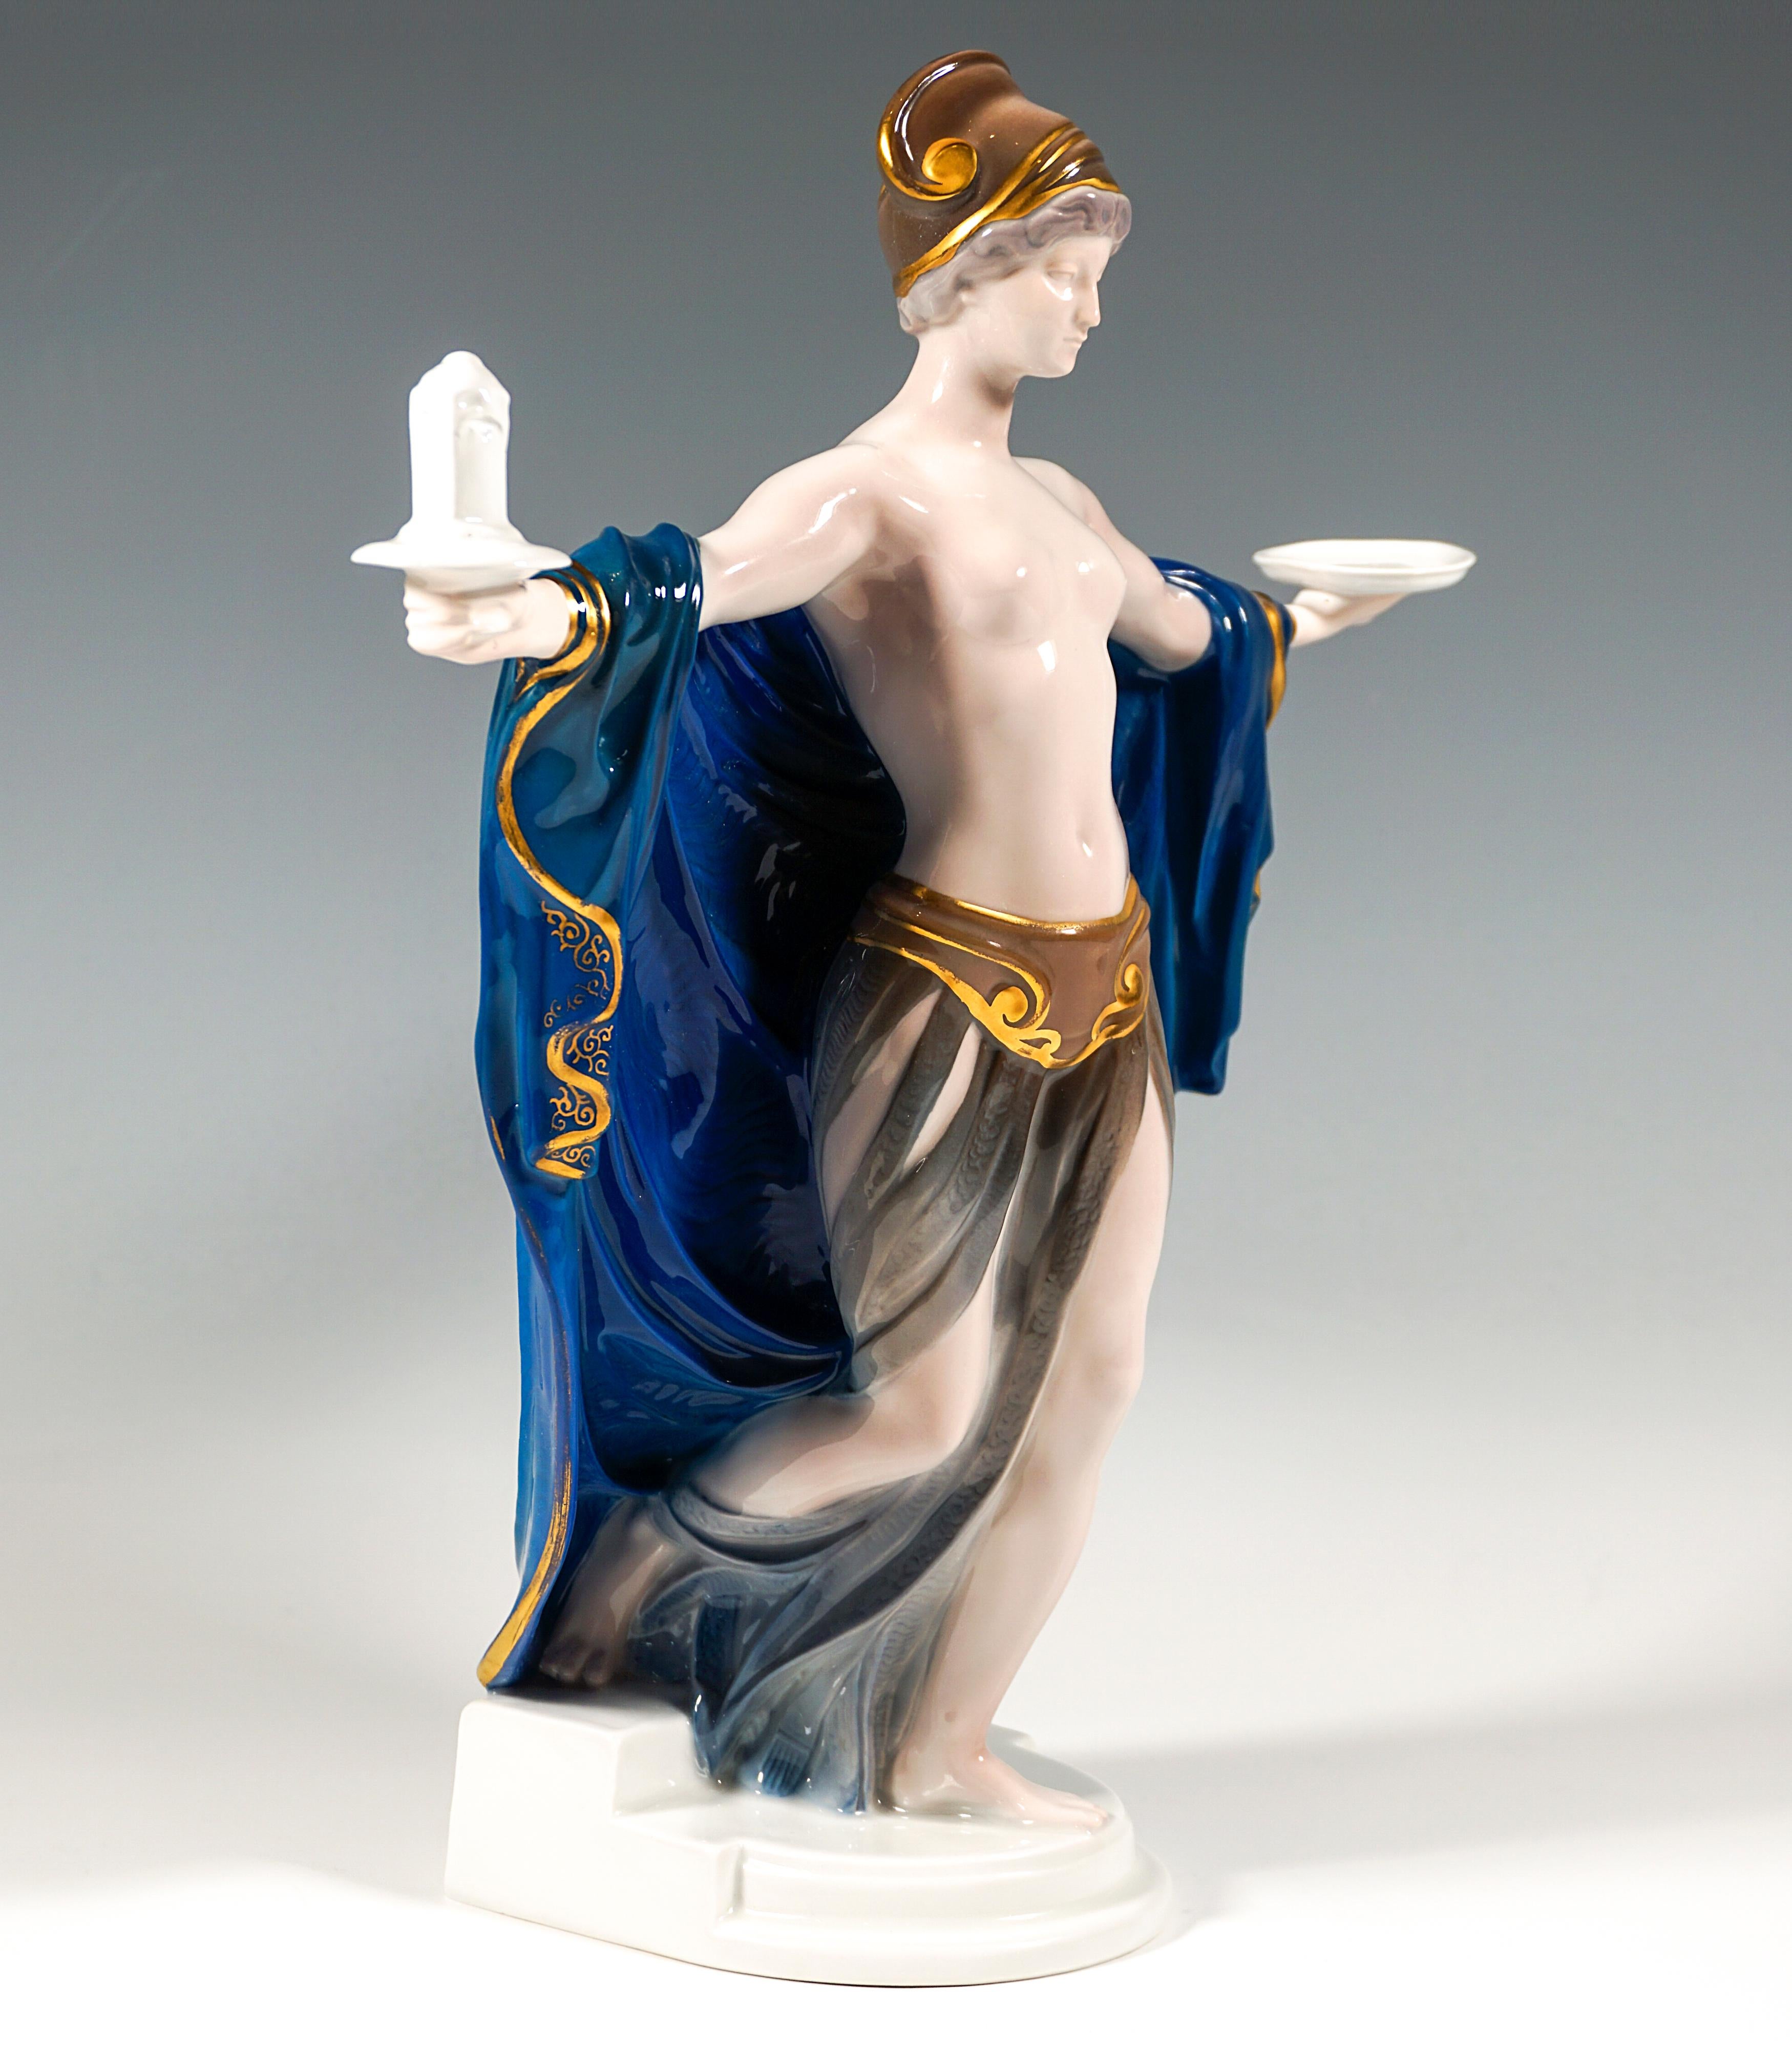 Très rare figurine de Rosenthal, il n'en existe que 200 exemplaires :
Une beauté Art Nouveau légèrement vêtue, une ceinture autour des hanches, un long châle tombant doucement autour de ses jambes, une coiffe en forme de casque avec des détails